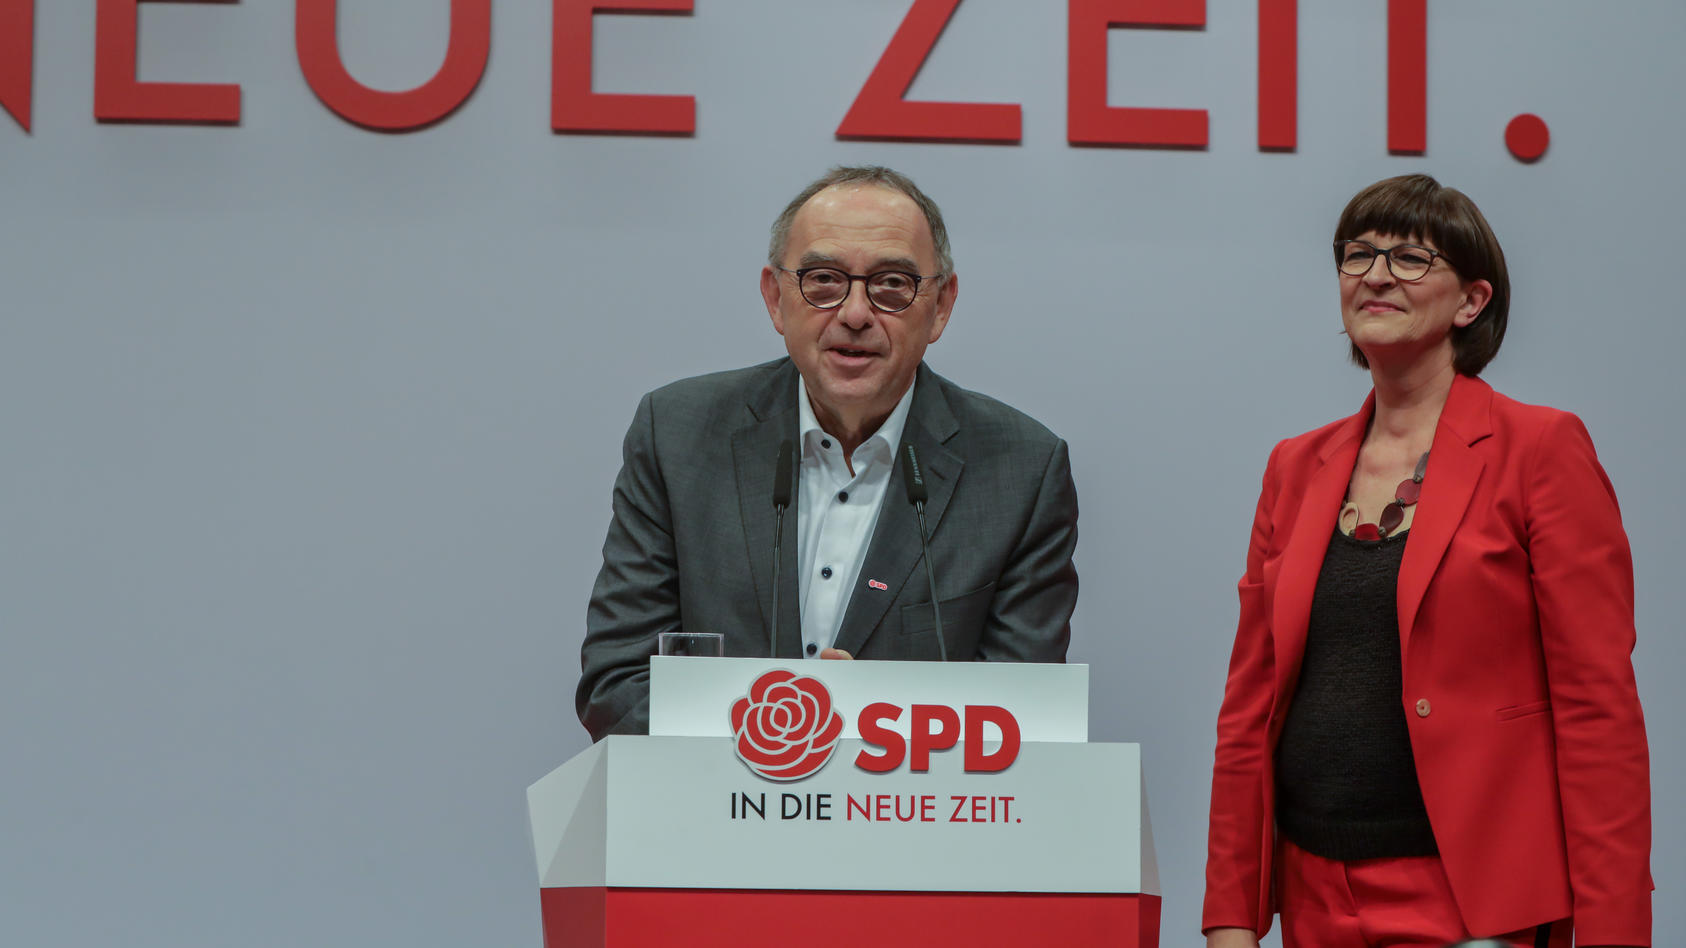 DEU, Deutschland, Berlin, 06.12.2019: SPD-Bundesparteitag, Saskia Esken und Norbert Walter-Borjans, sind als SPD-Vorsit